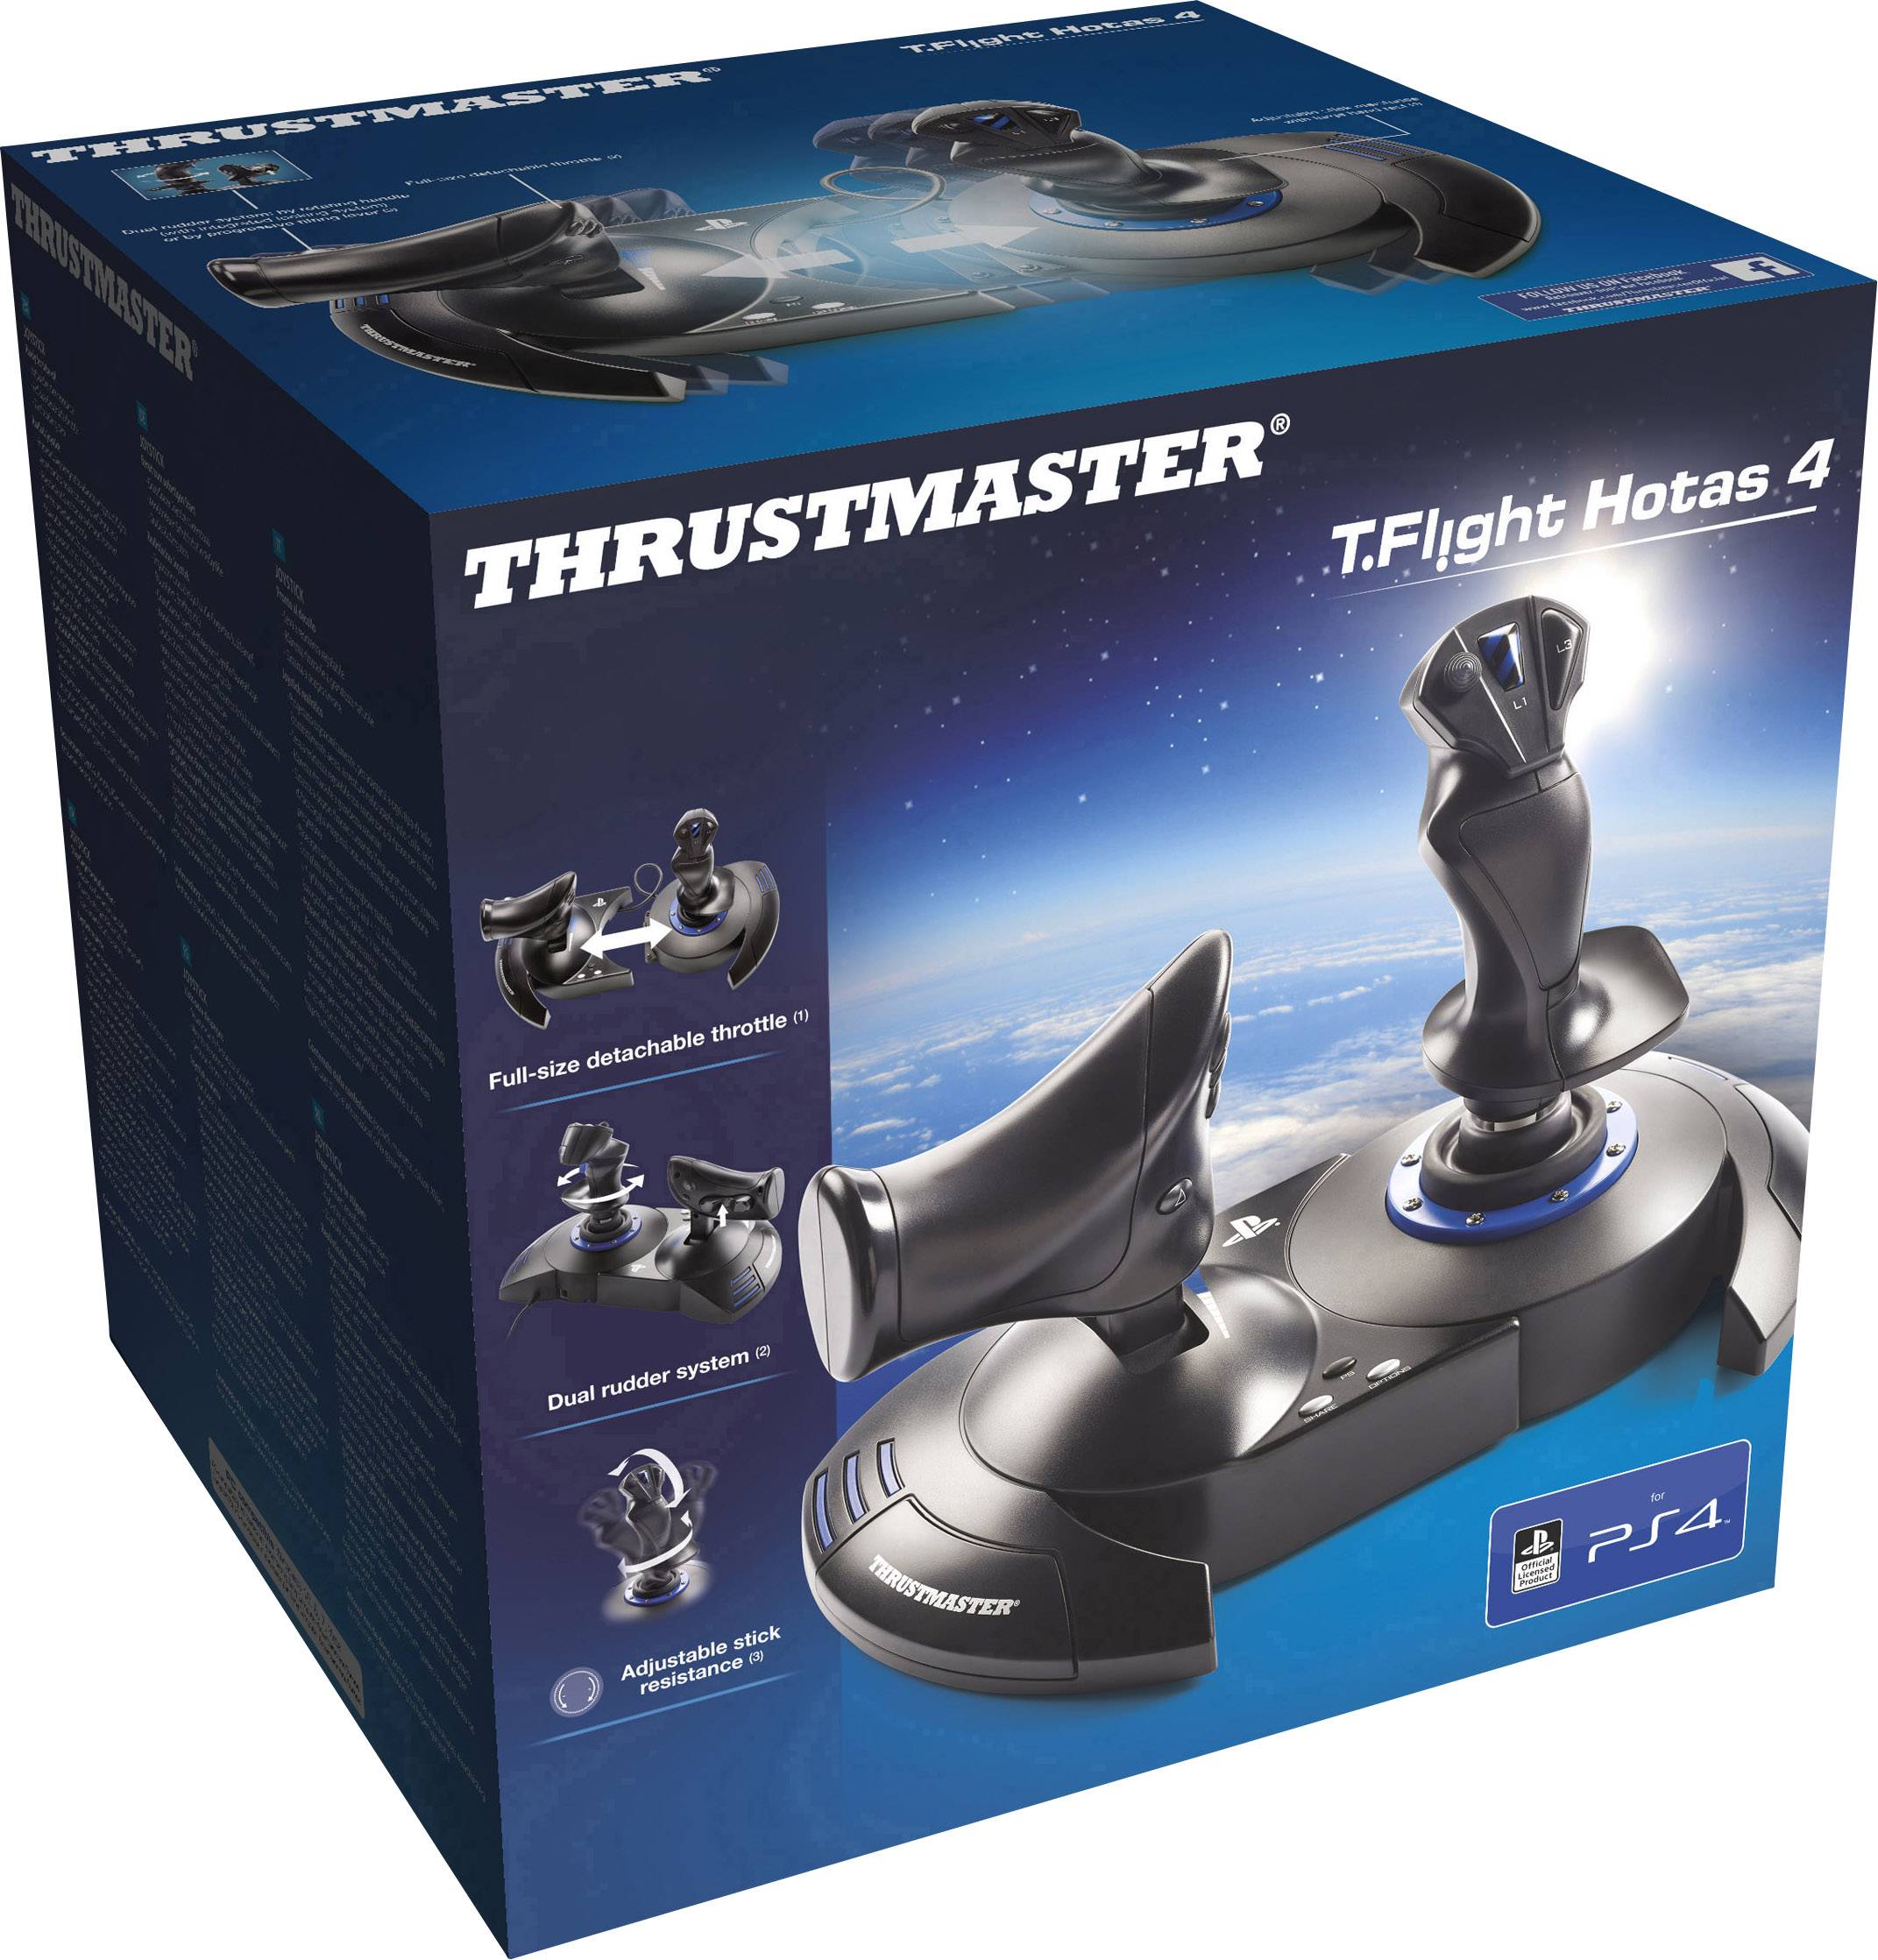 Thrustmaster T Flight Hotas 4 Flight Sim Joystick Usb Playstation 4 Pc Black Blue Conrad Com